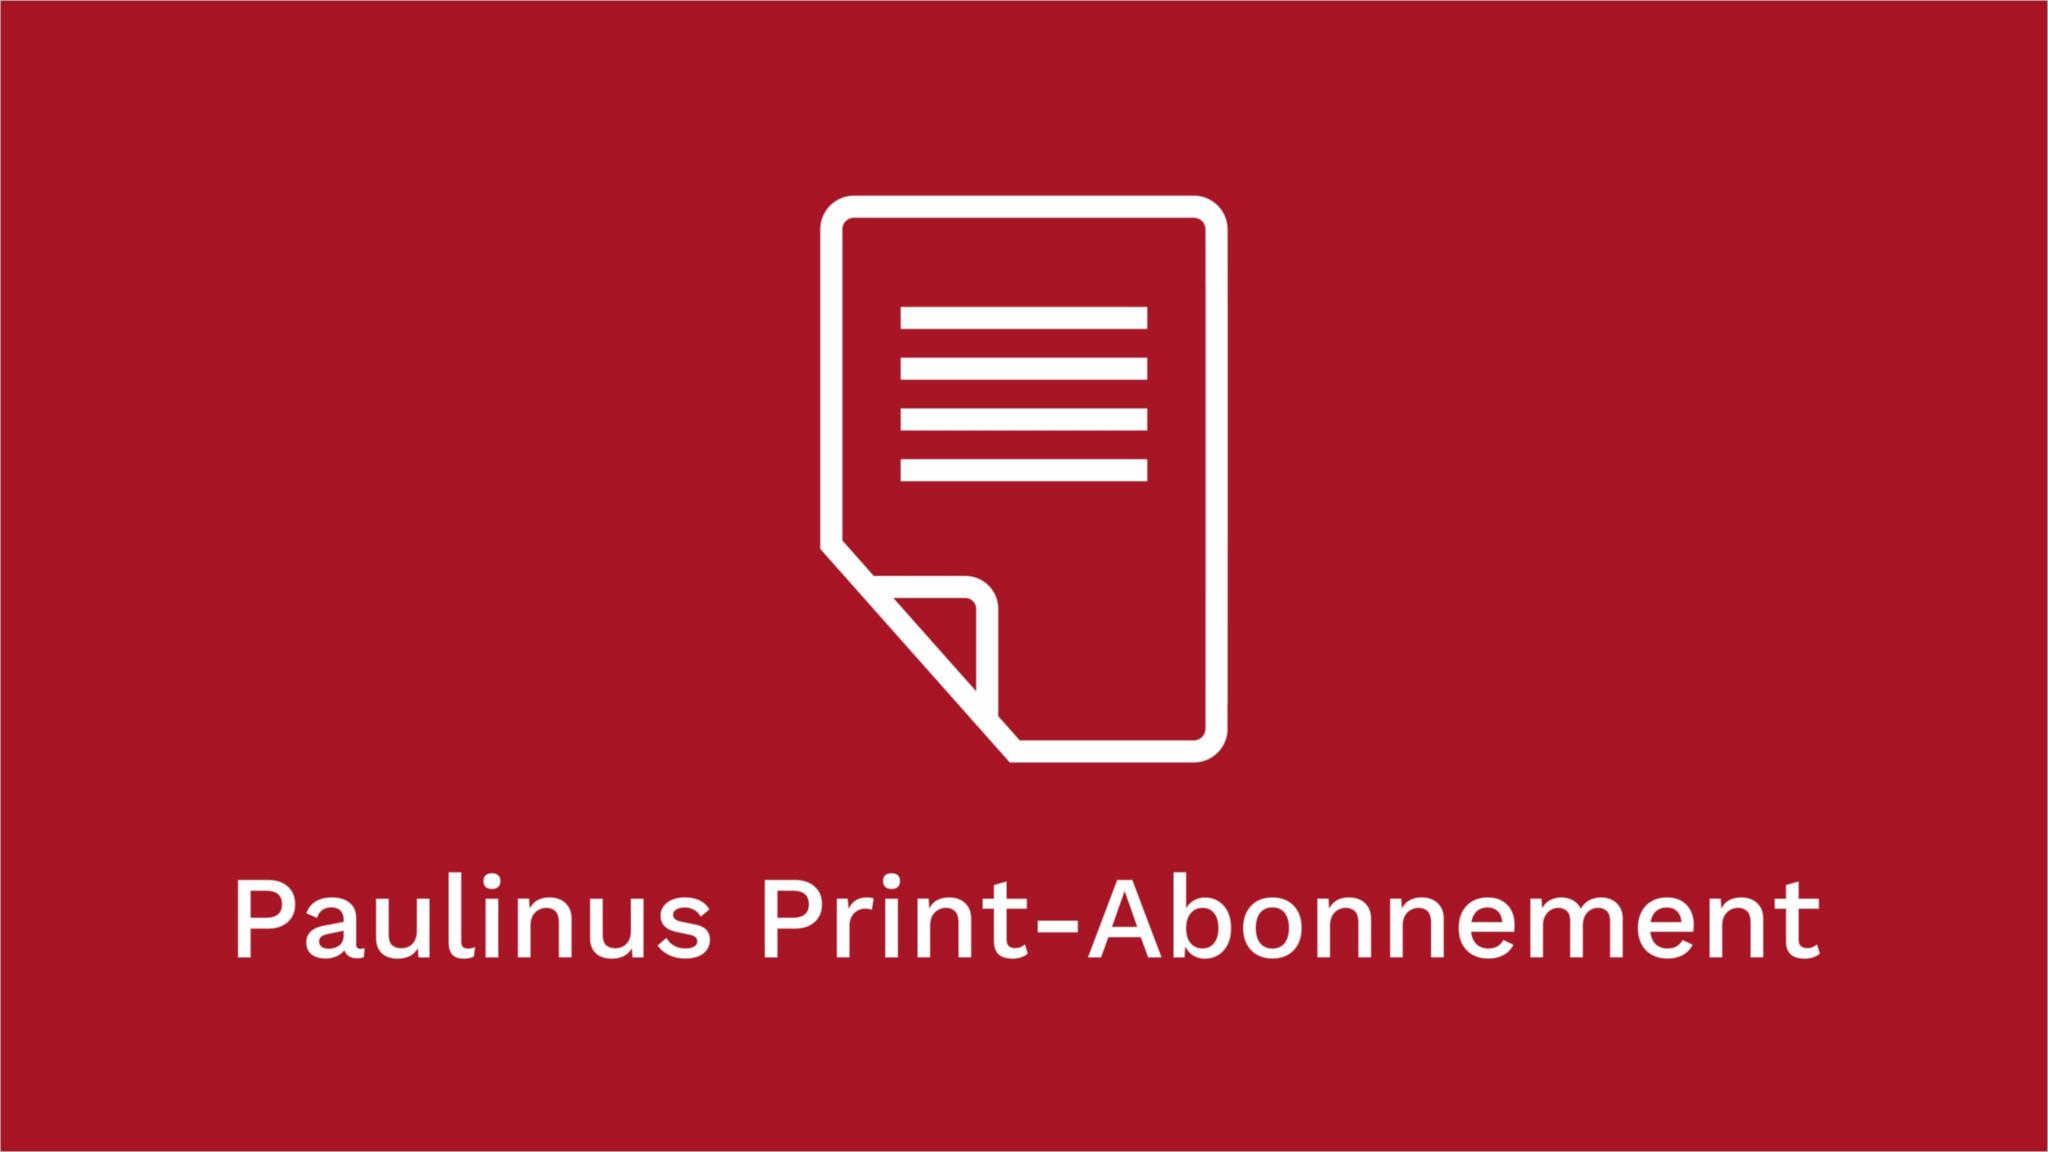 Paulinus Print-Abonnement